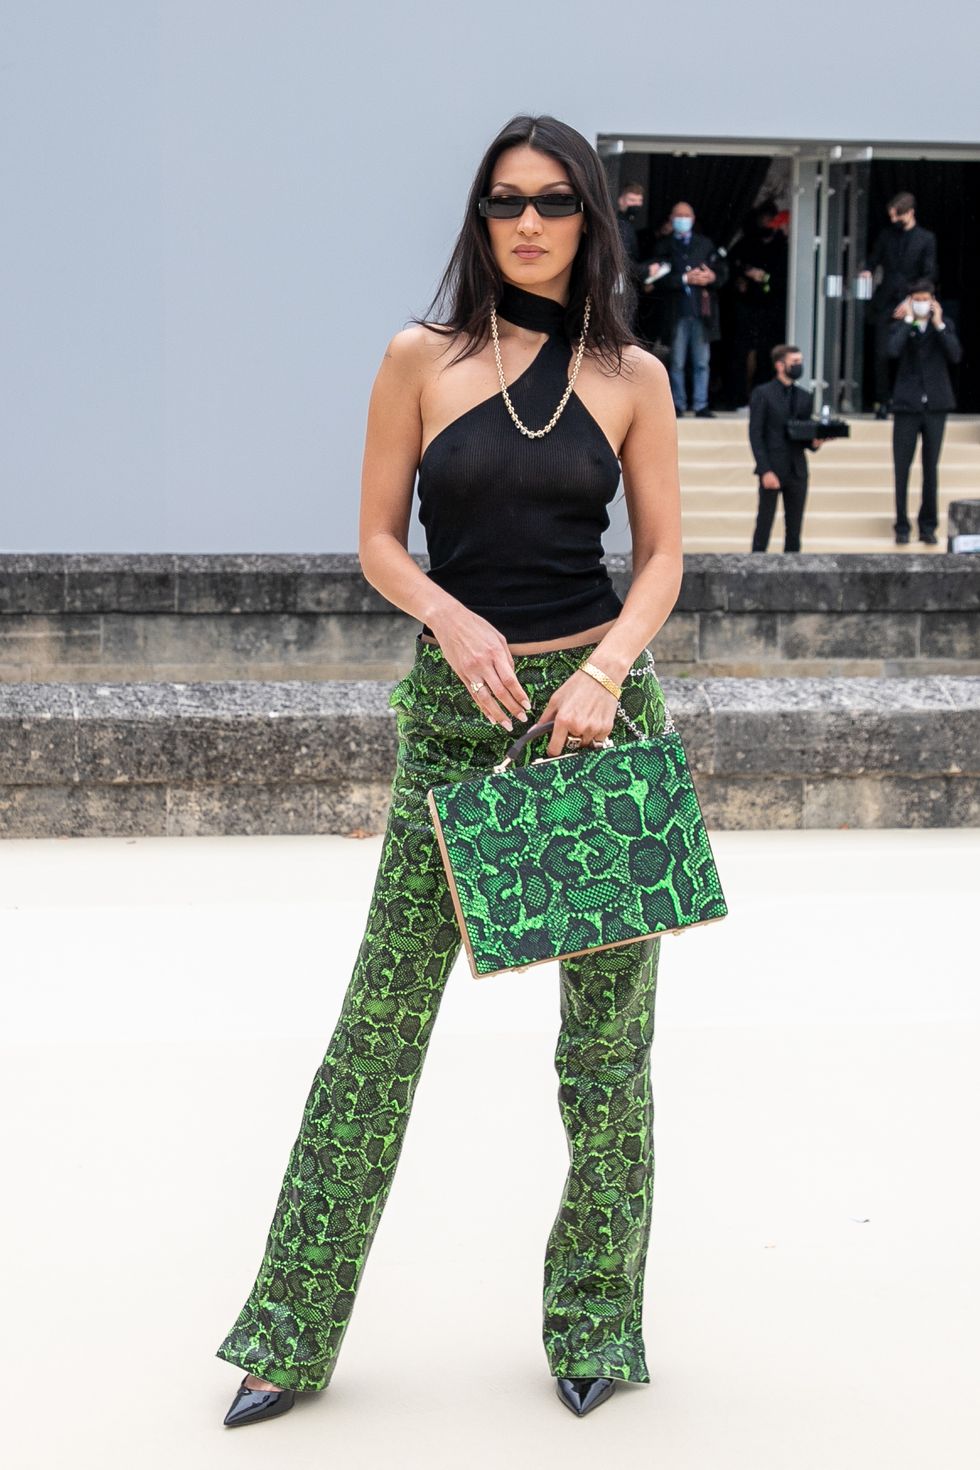 Bella Hadid arrives at Louis Vuitton store during Paris Fashion Week